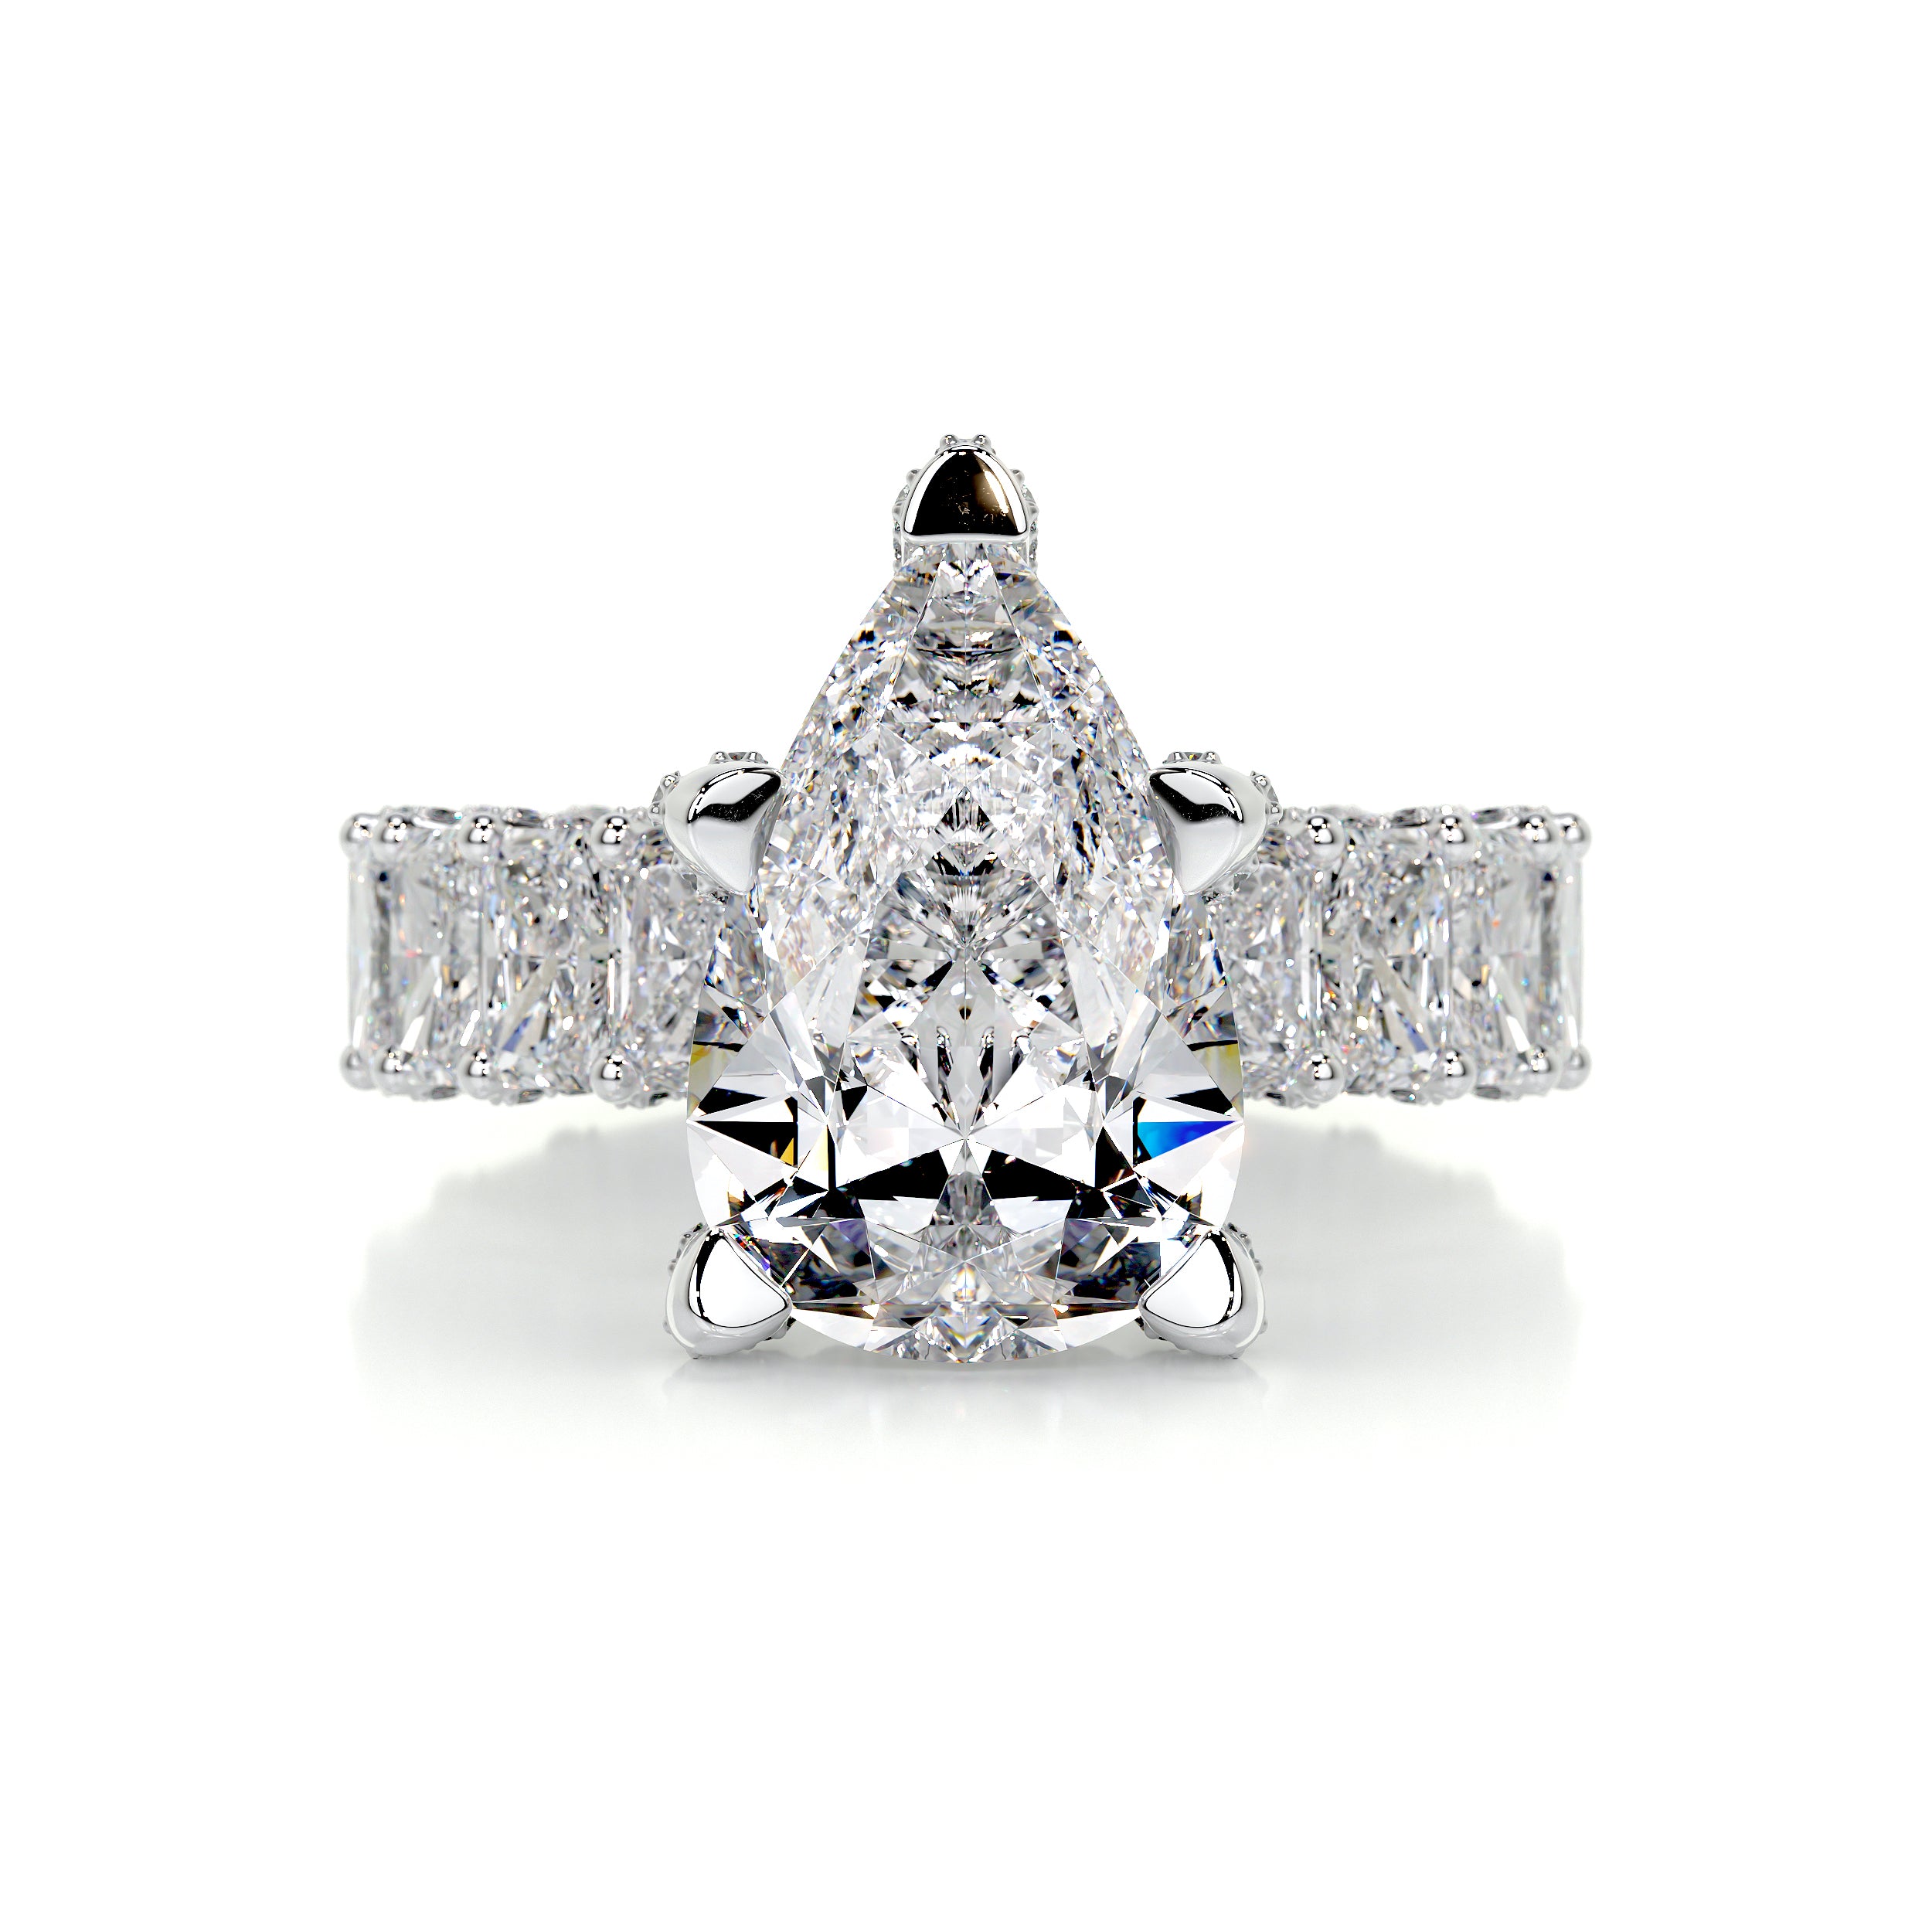 Arabella Diamond Engagement Ring   (8 Carat) -18K White Gold